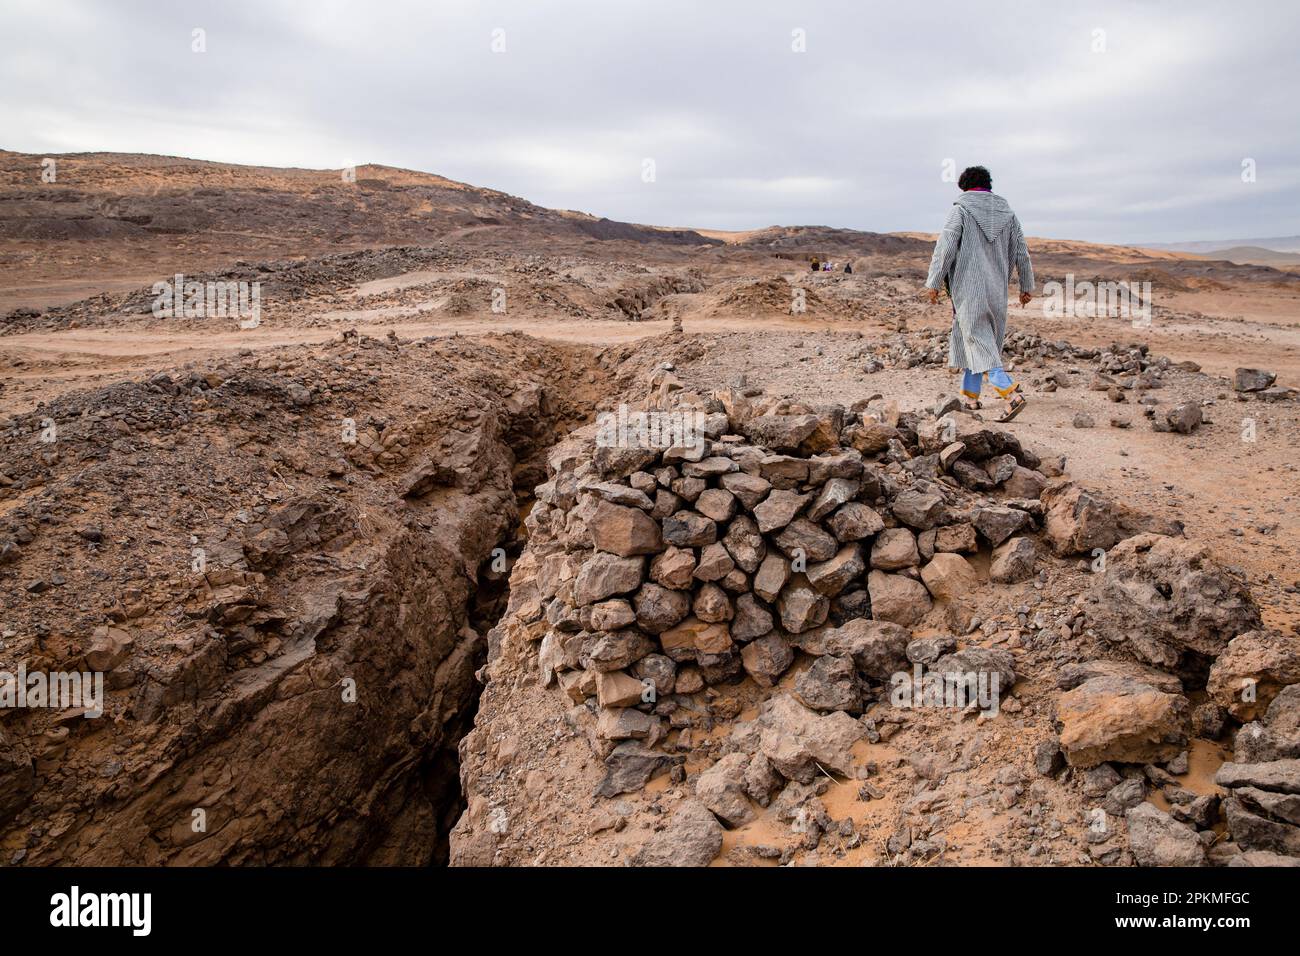 Ein Berber mit einer Djellaba geht in der Wüste zwischen Steinen spazieren Stockfoto